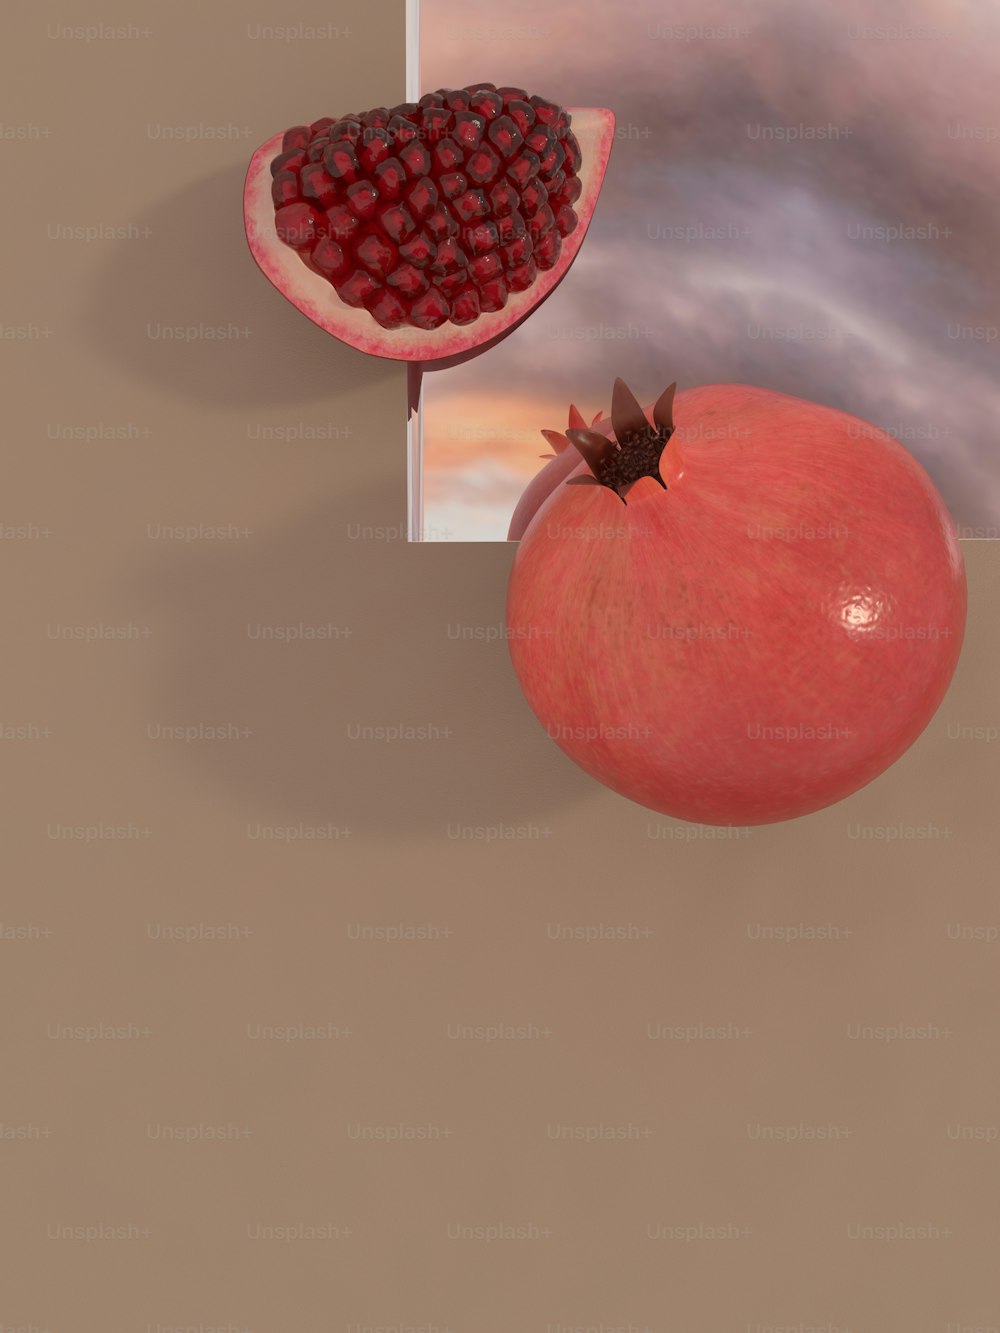 Une image d’une grenade et d’un fruit